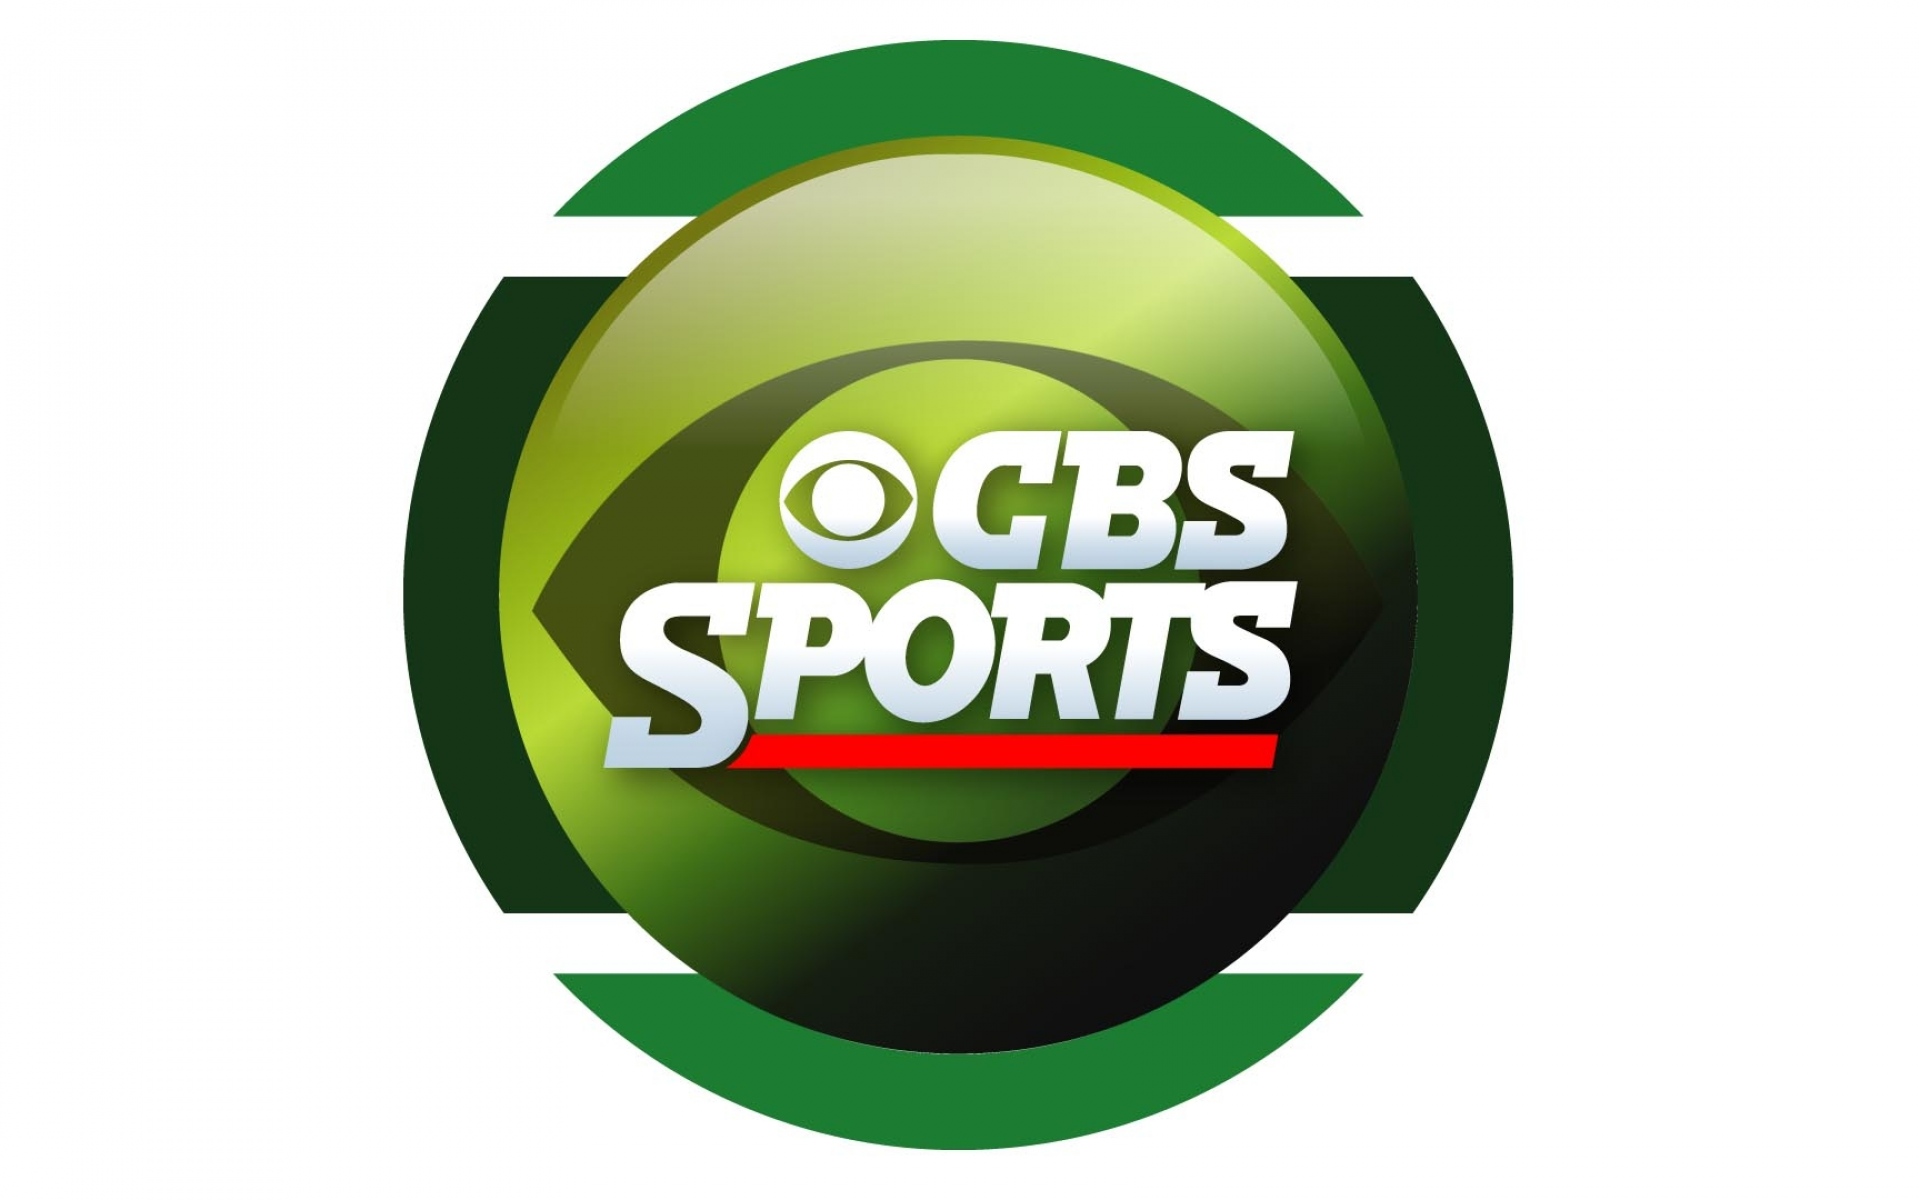 Cbs sports izle. CBS Sports. CBS Sports logo. CBS Sports Network us. CBS Sports ведущая.